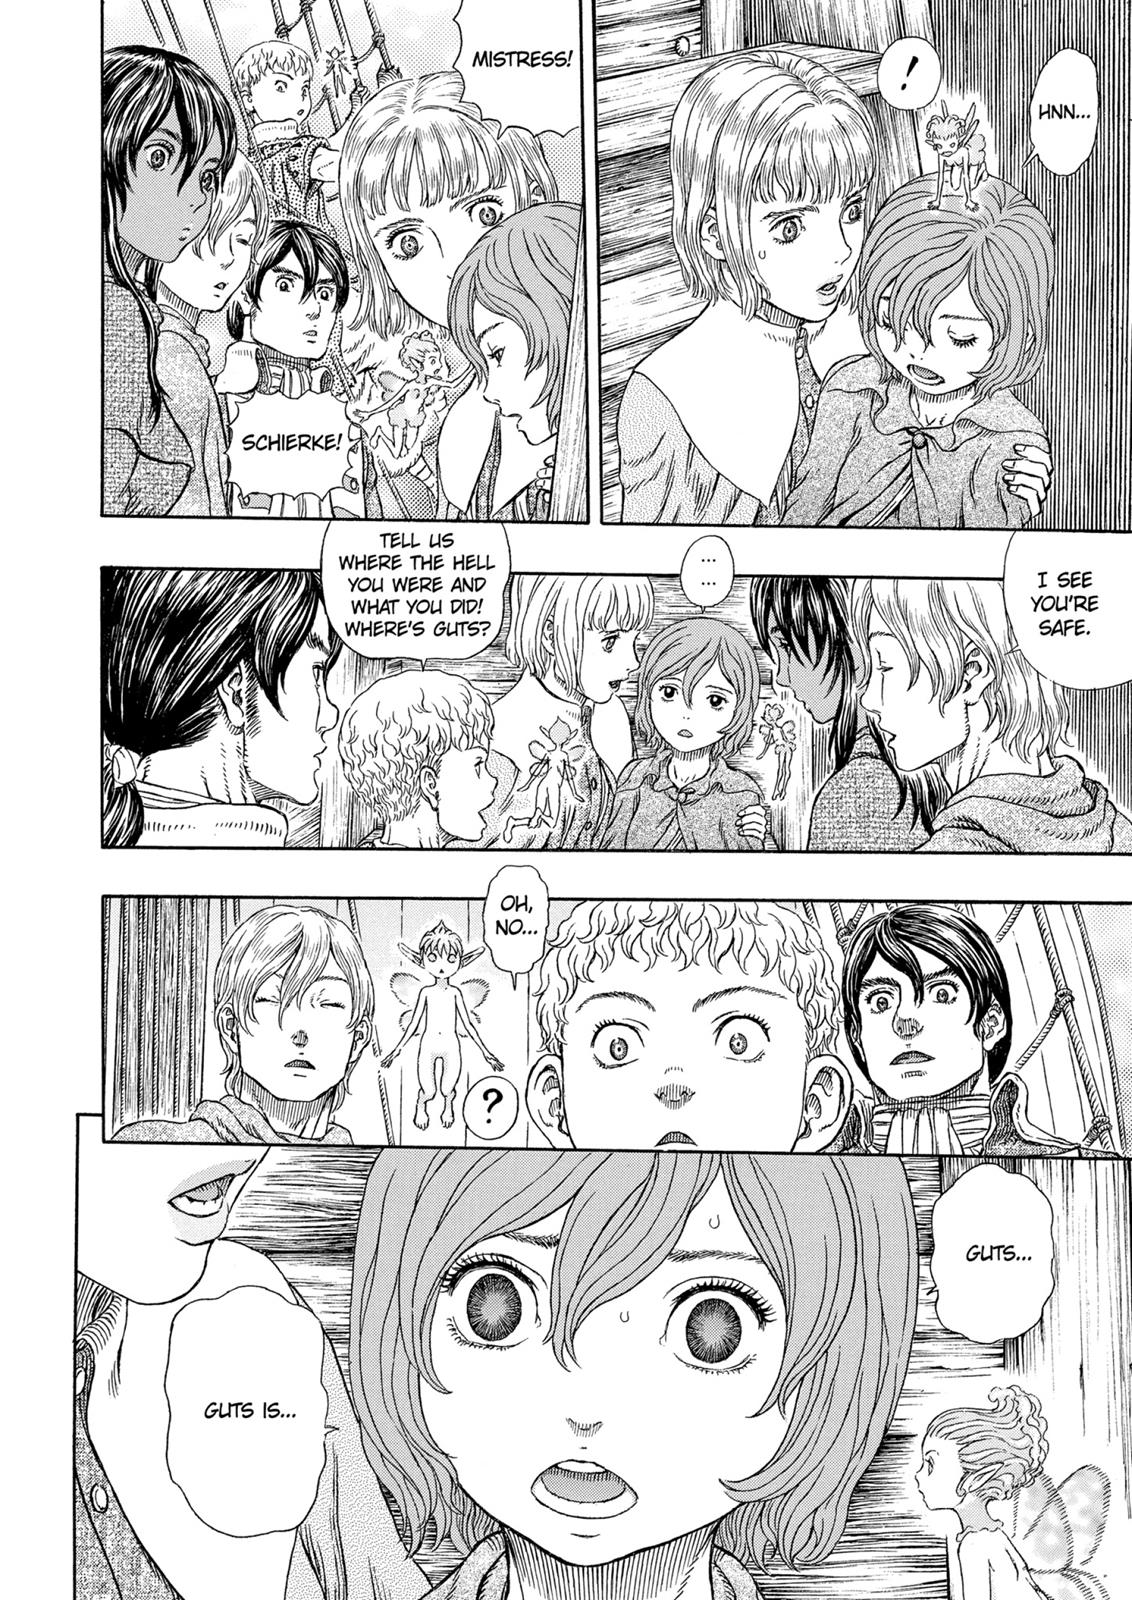 Berserk Manga Chapter 326 image 18